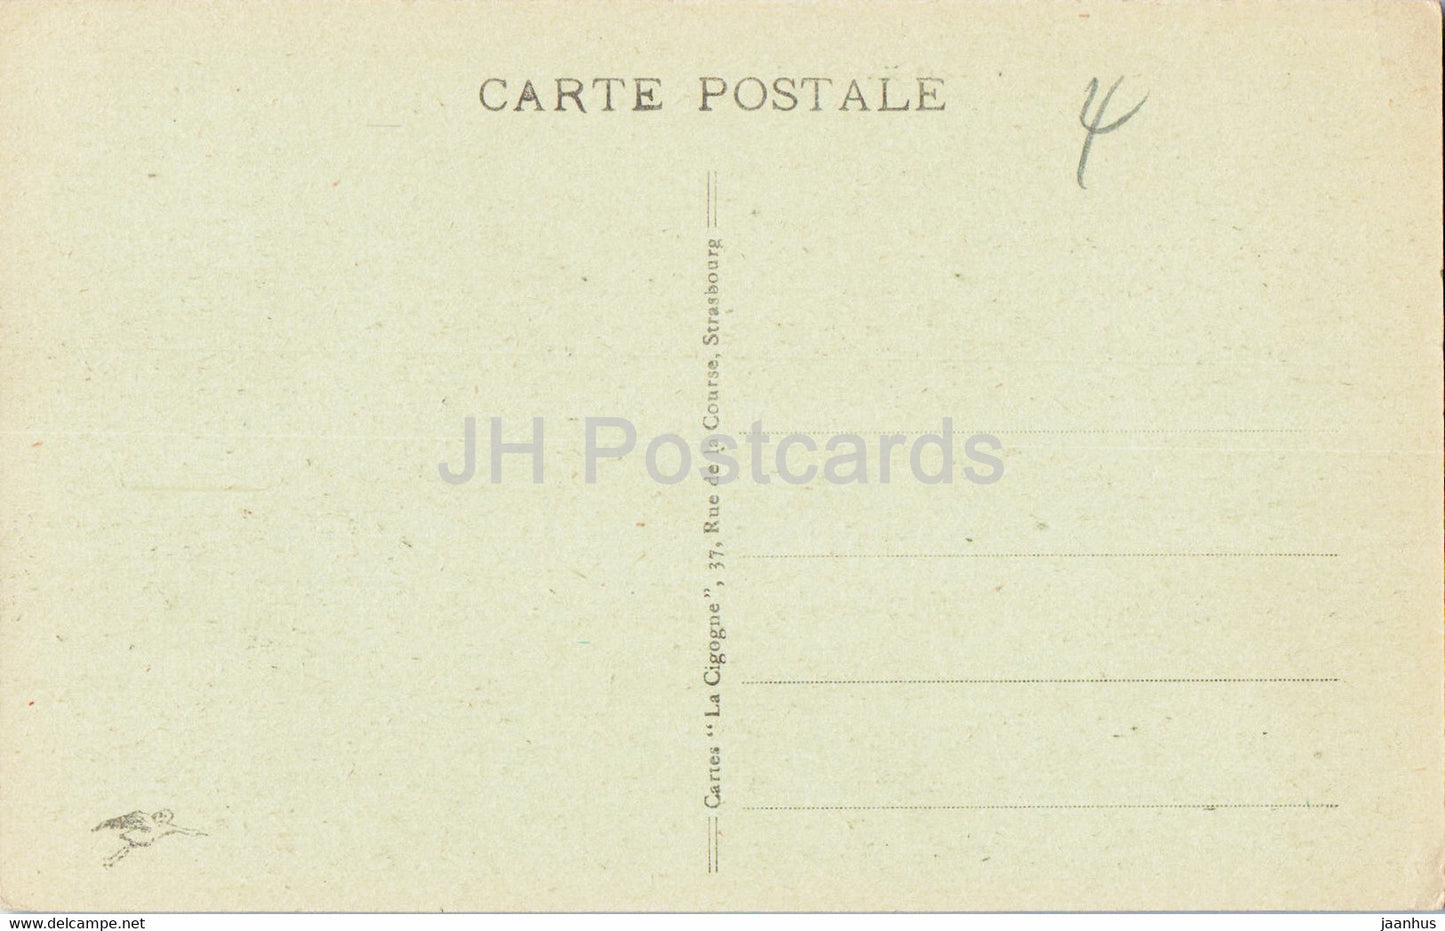 Colmar - La Lauch - 61 - carte postale ancienne - France - inutilisée